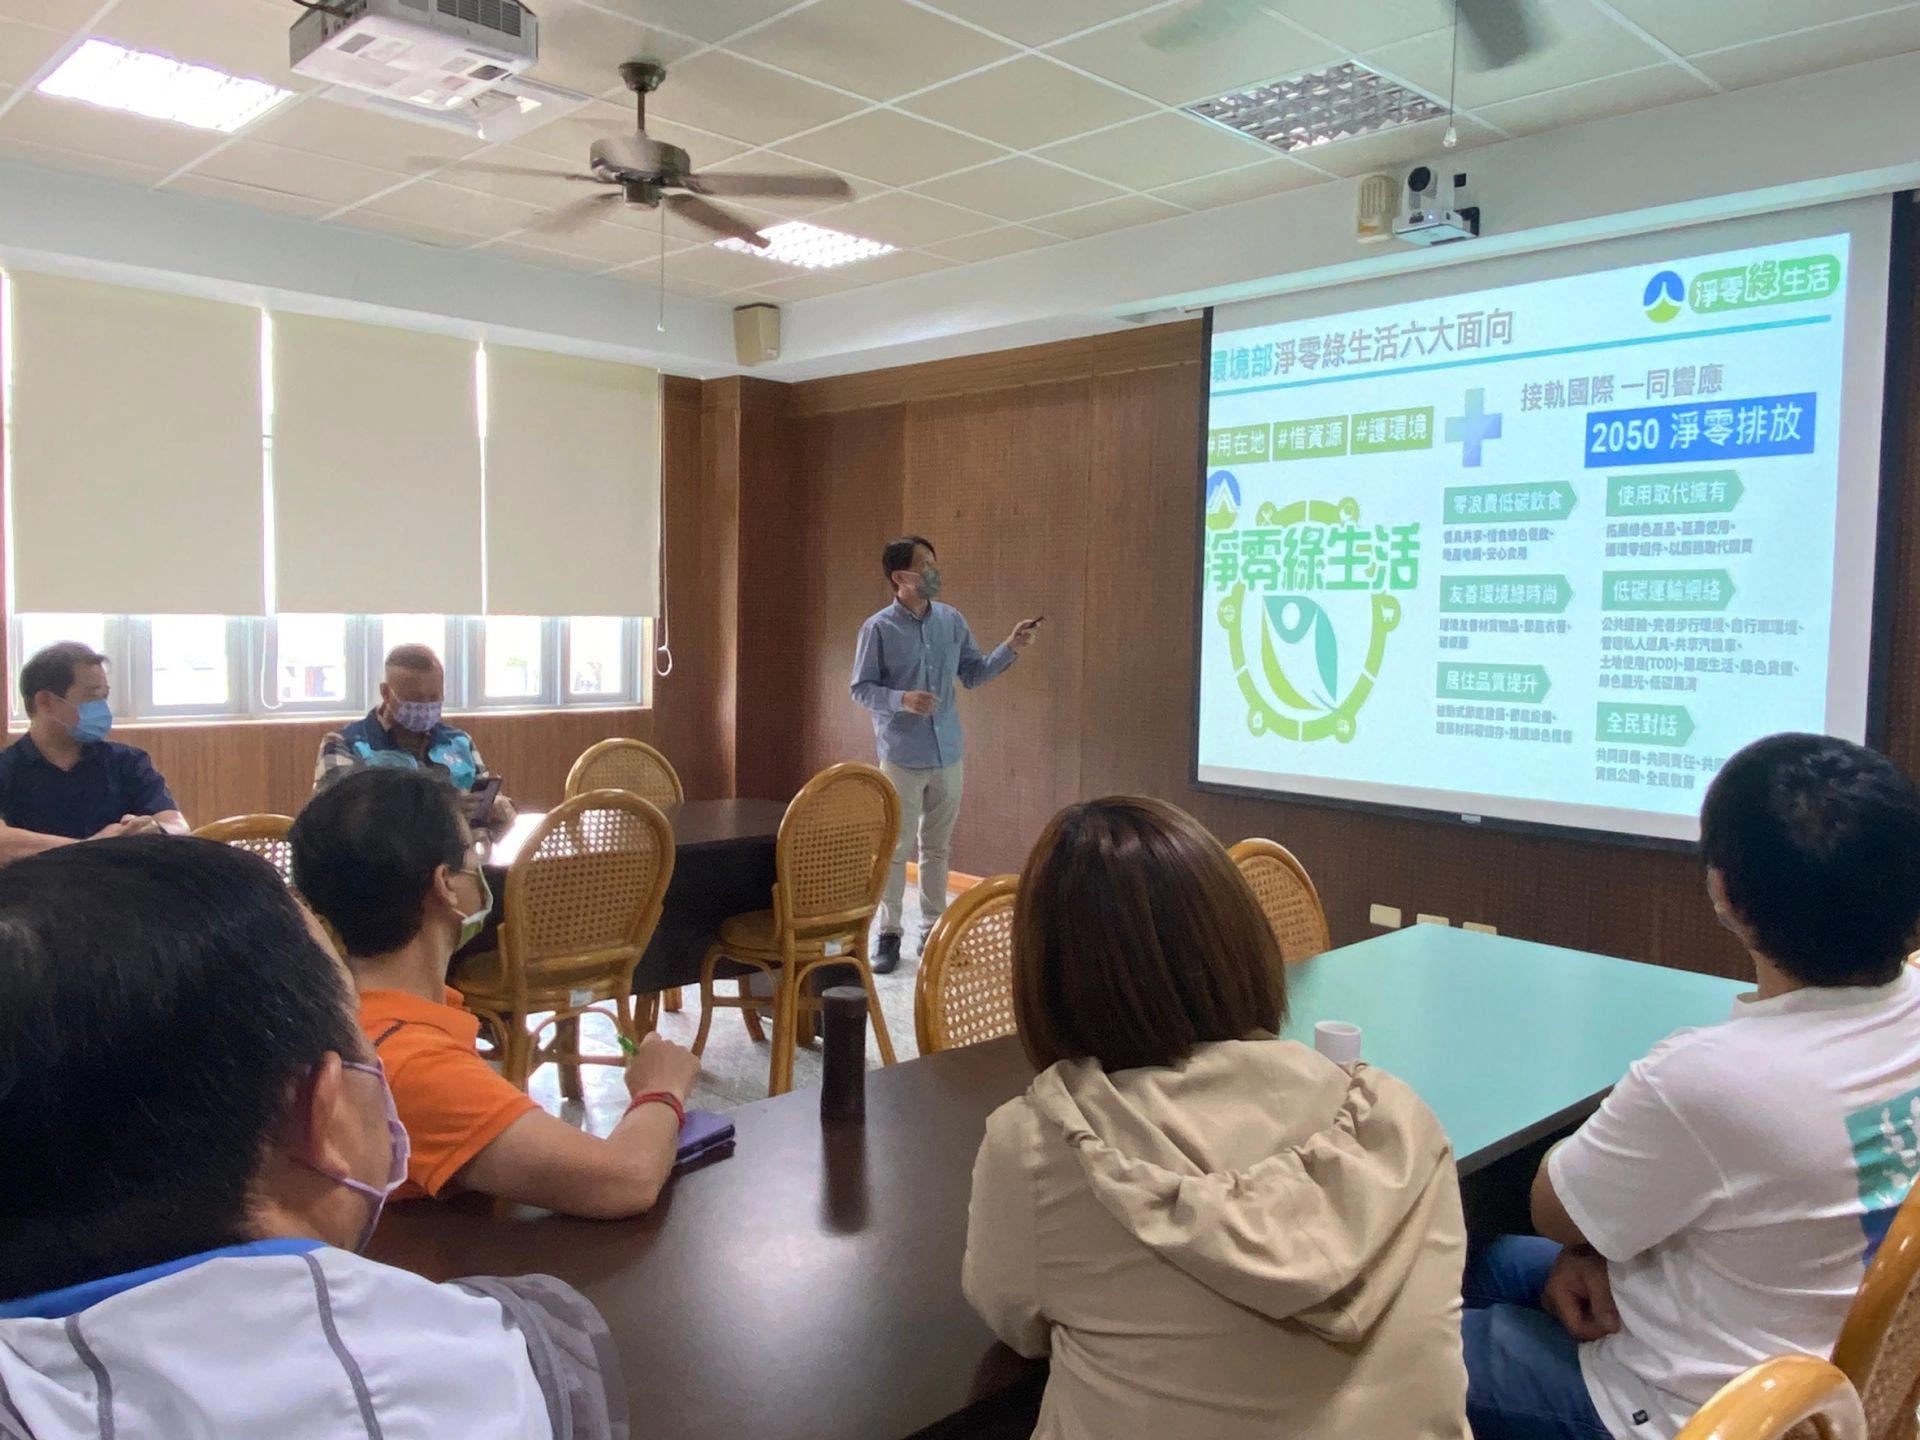 臺南市環境保護局邵柏豪先生向家長們說明環保旅宿及環保餐廳的認證流程。